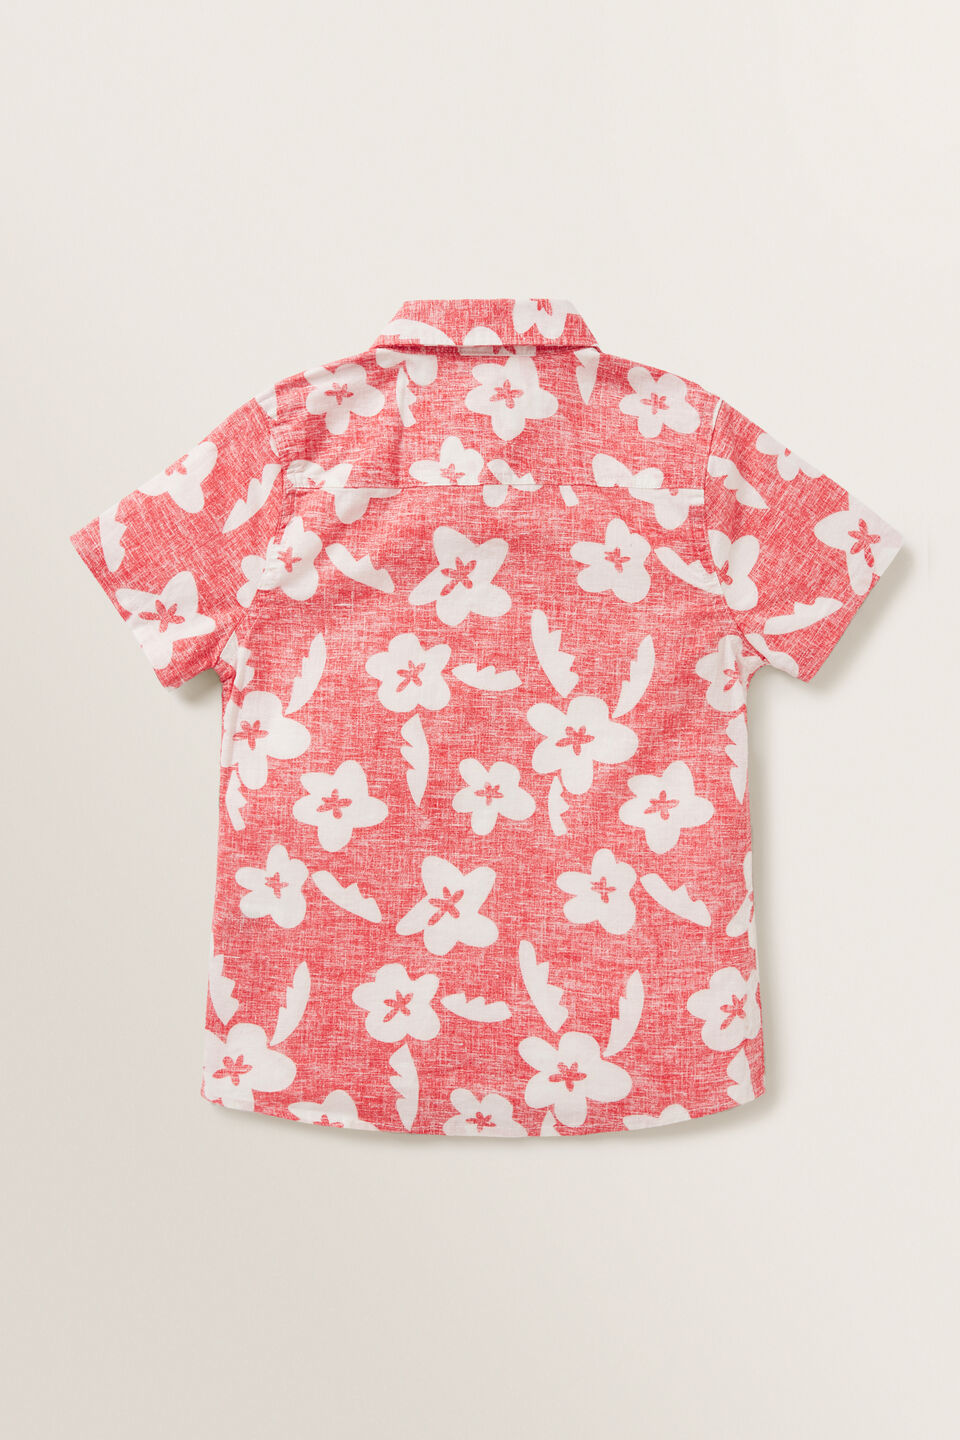 Retro Floral Shirt  